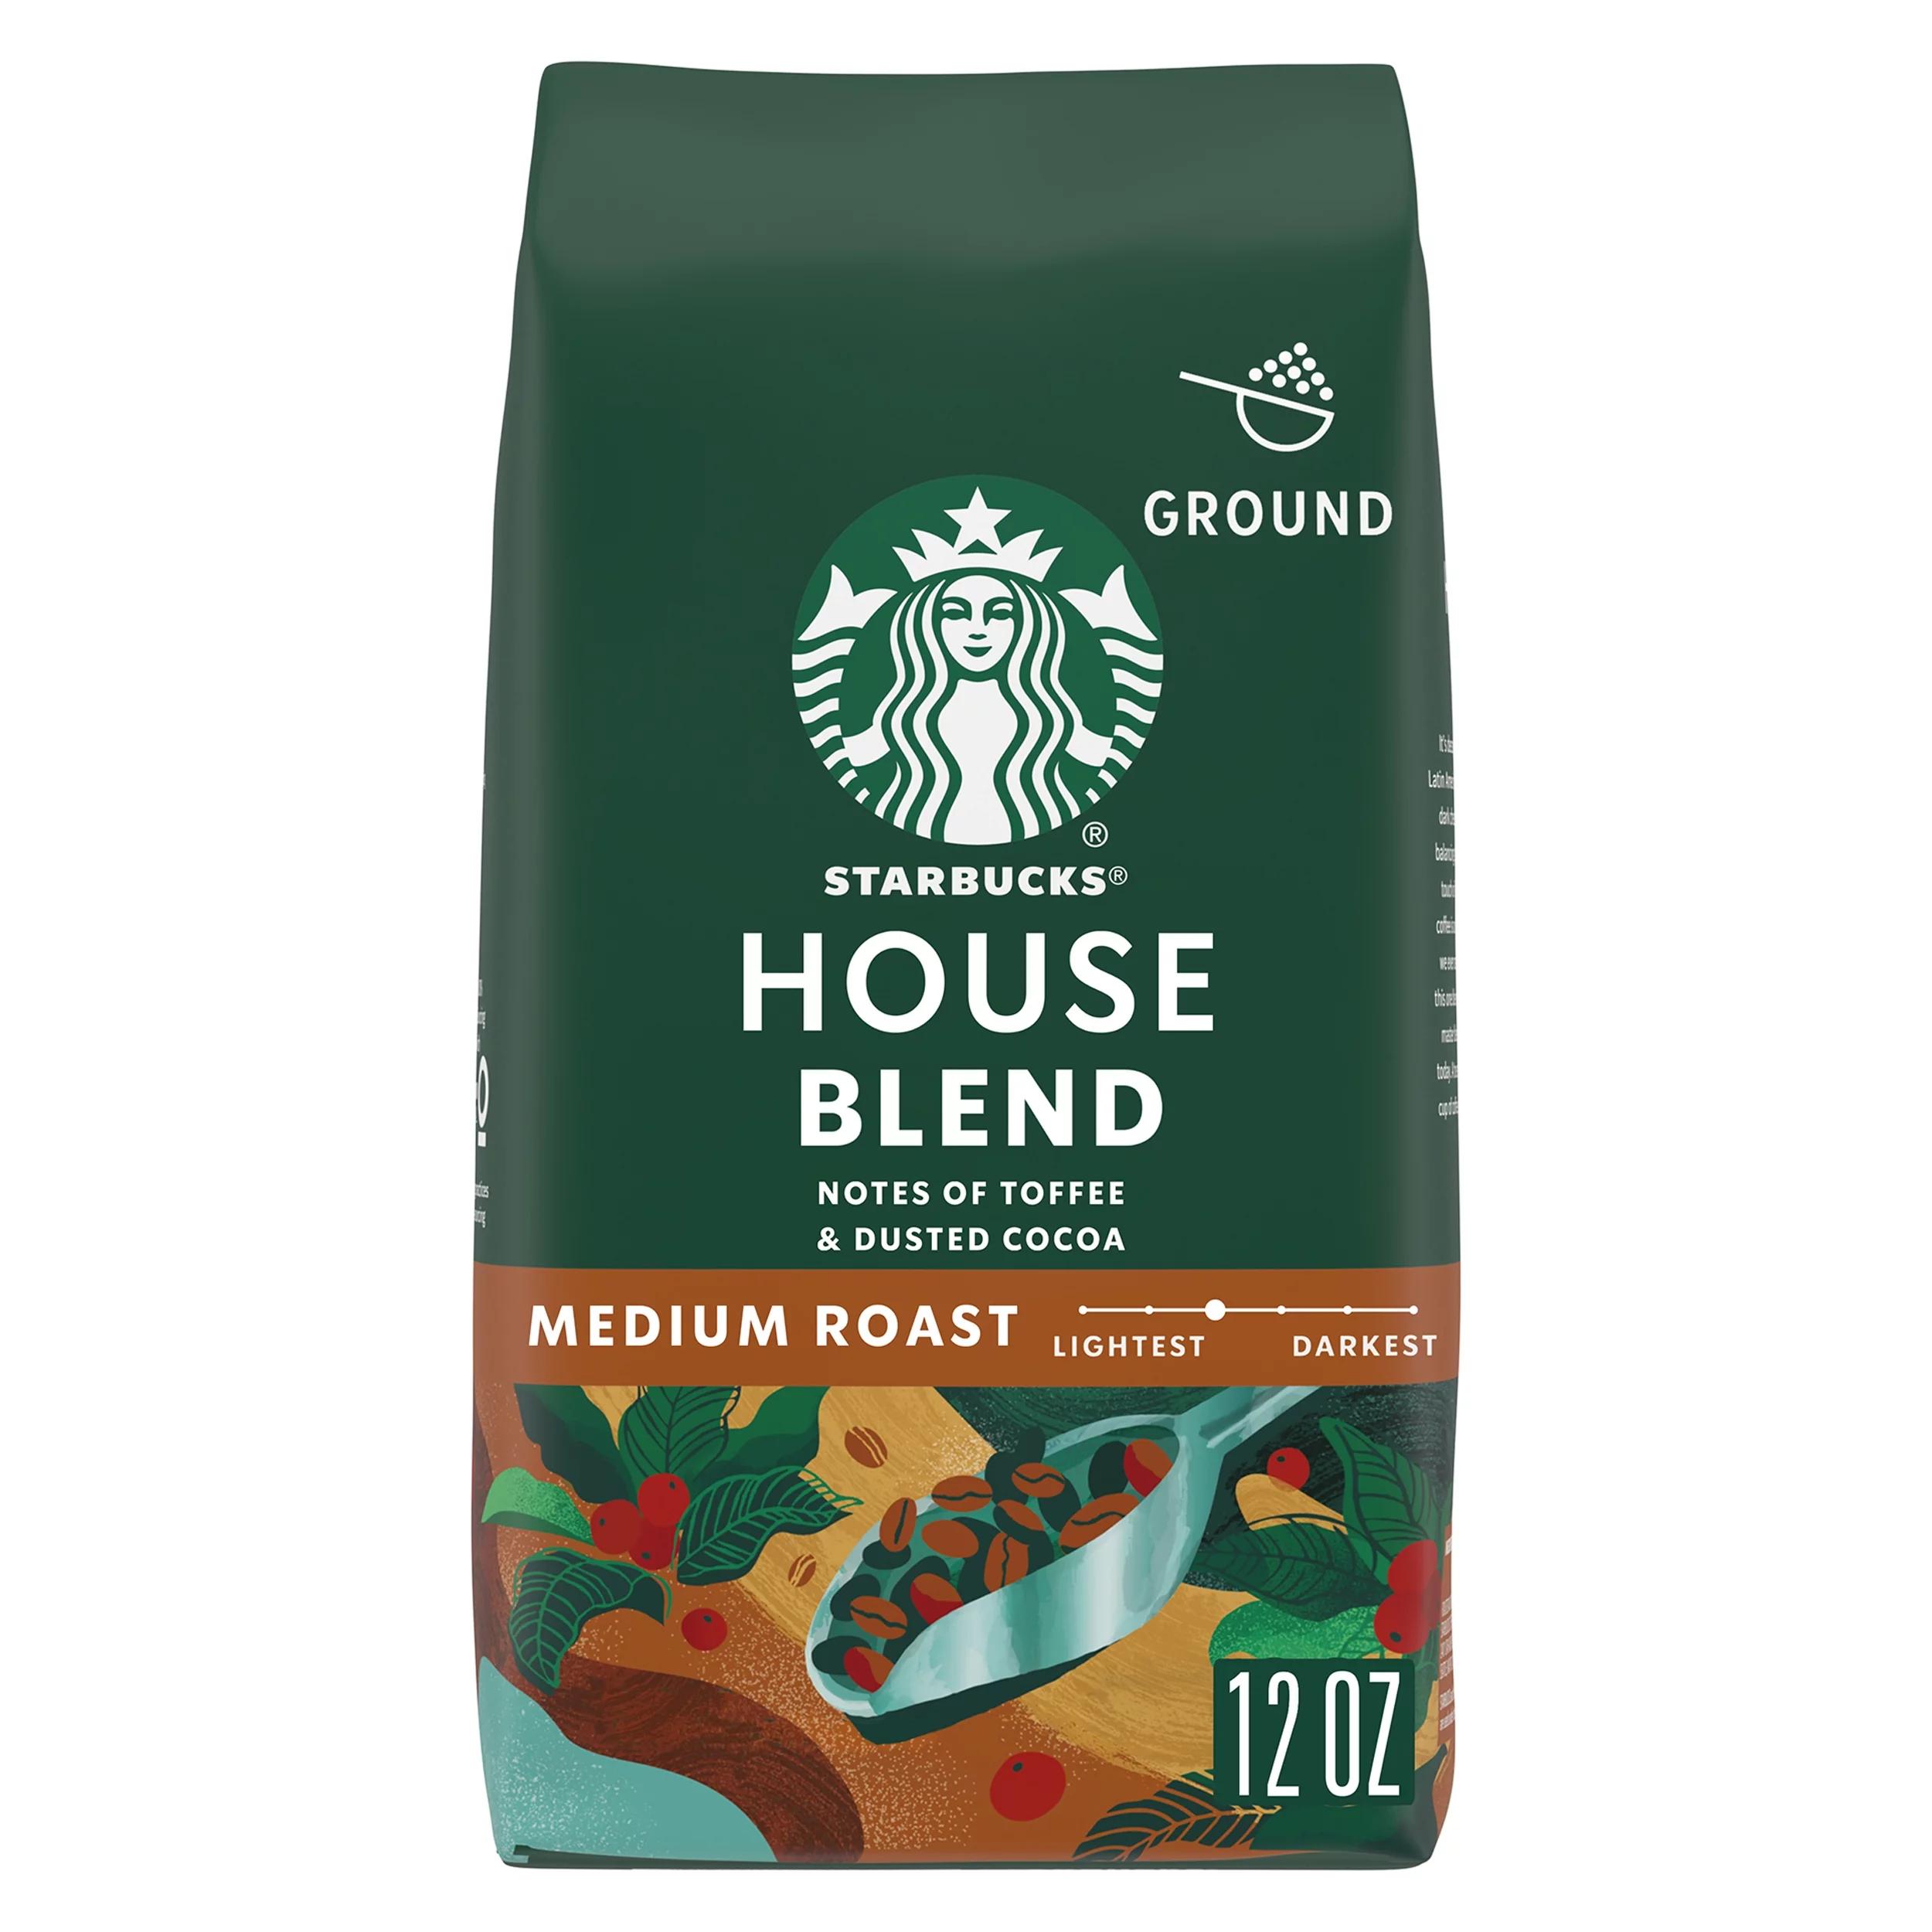 café house blend starbucks - Qué es Starbucks House Blend